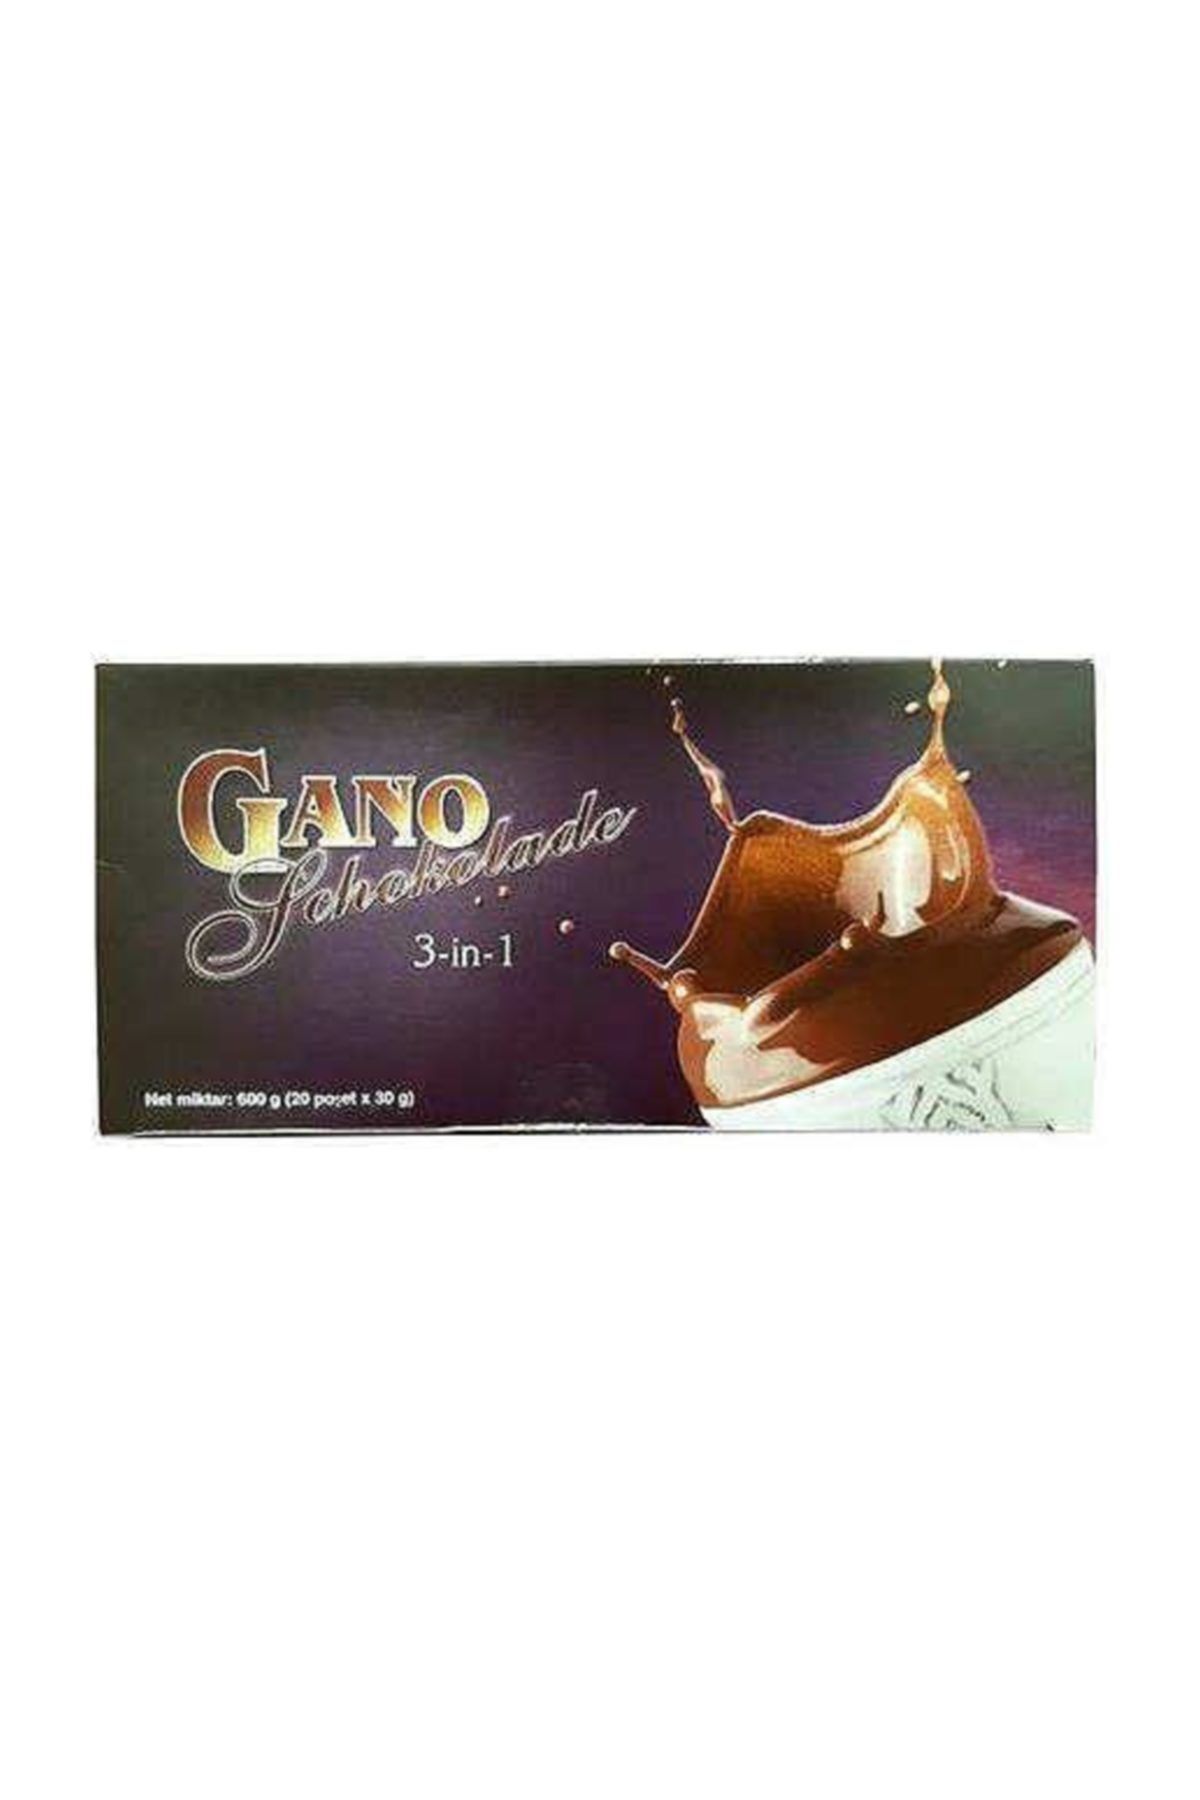 Gano Schokolade 3 In 1 (600 gr.-20 Poşet)